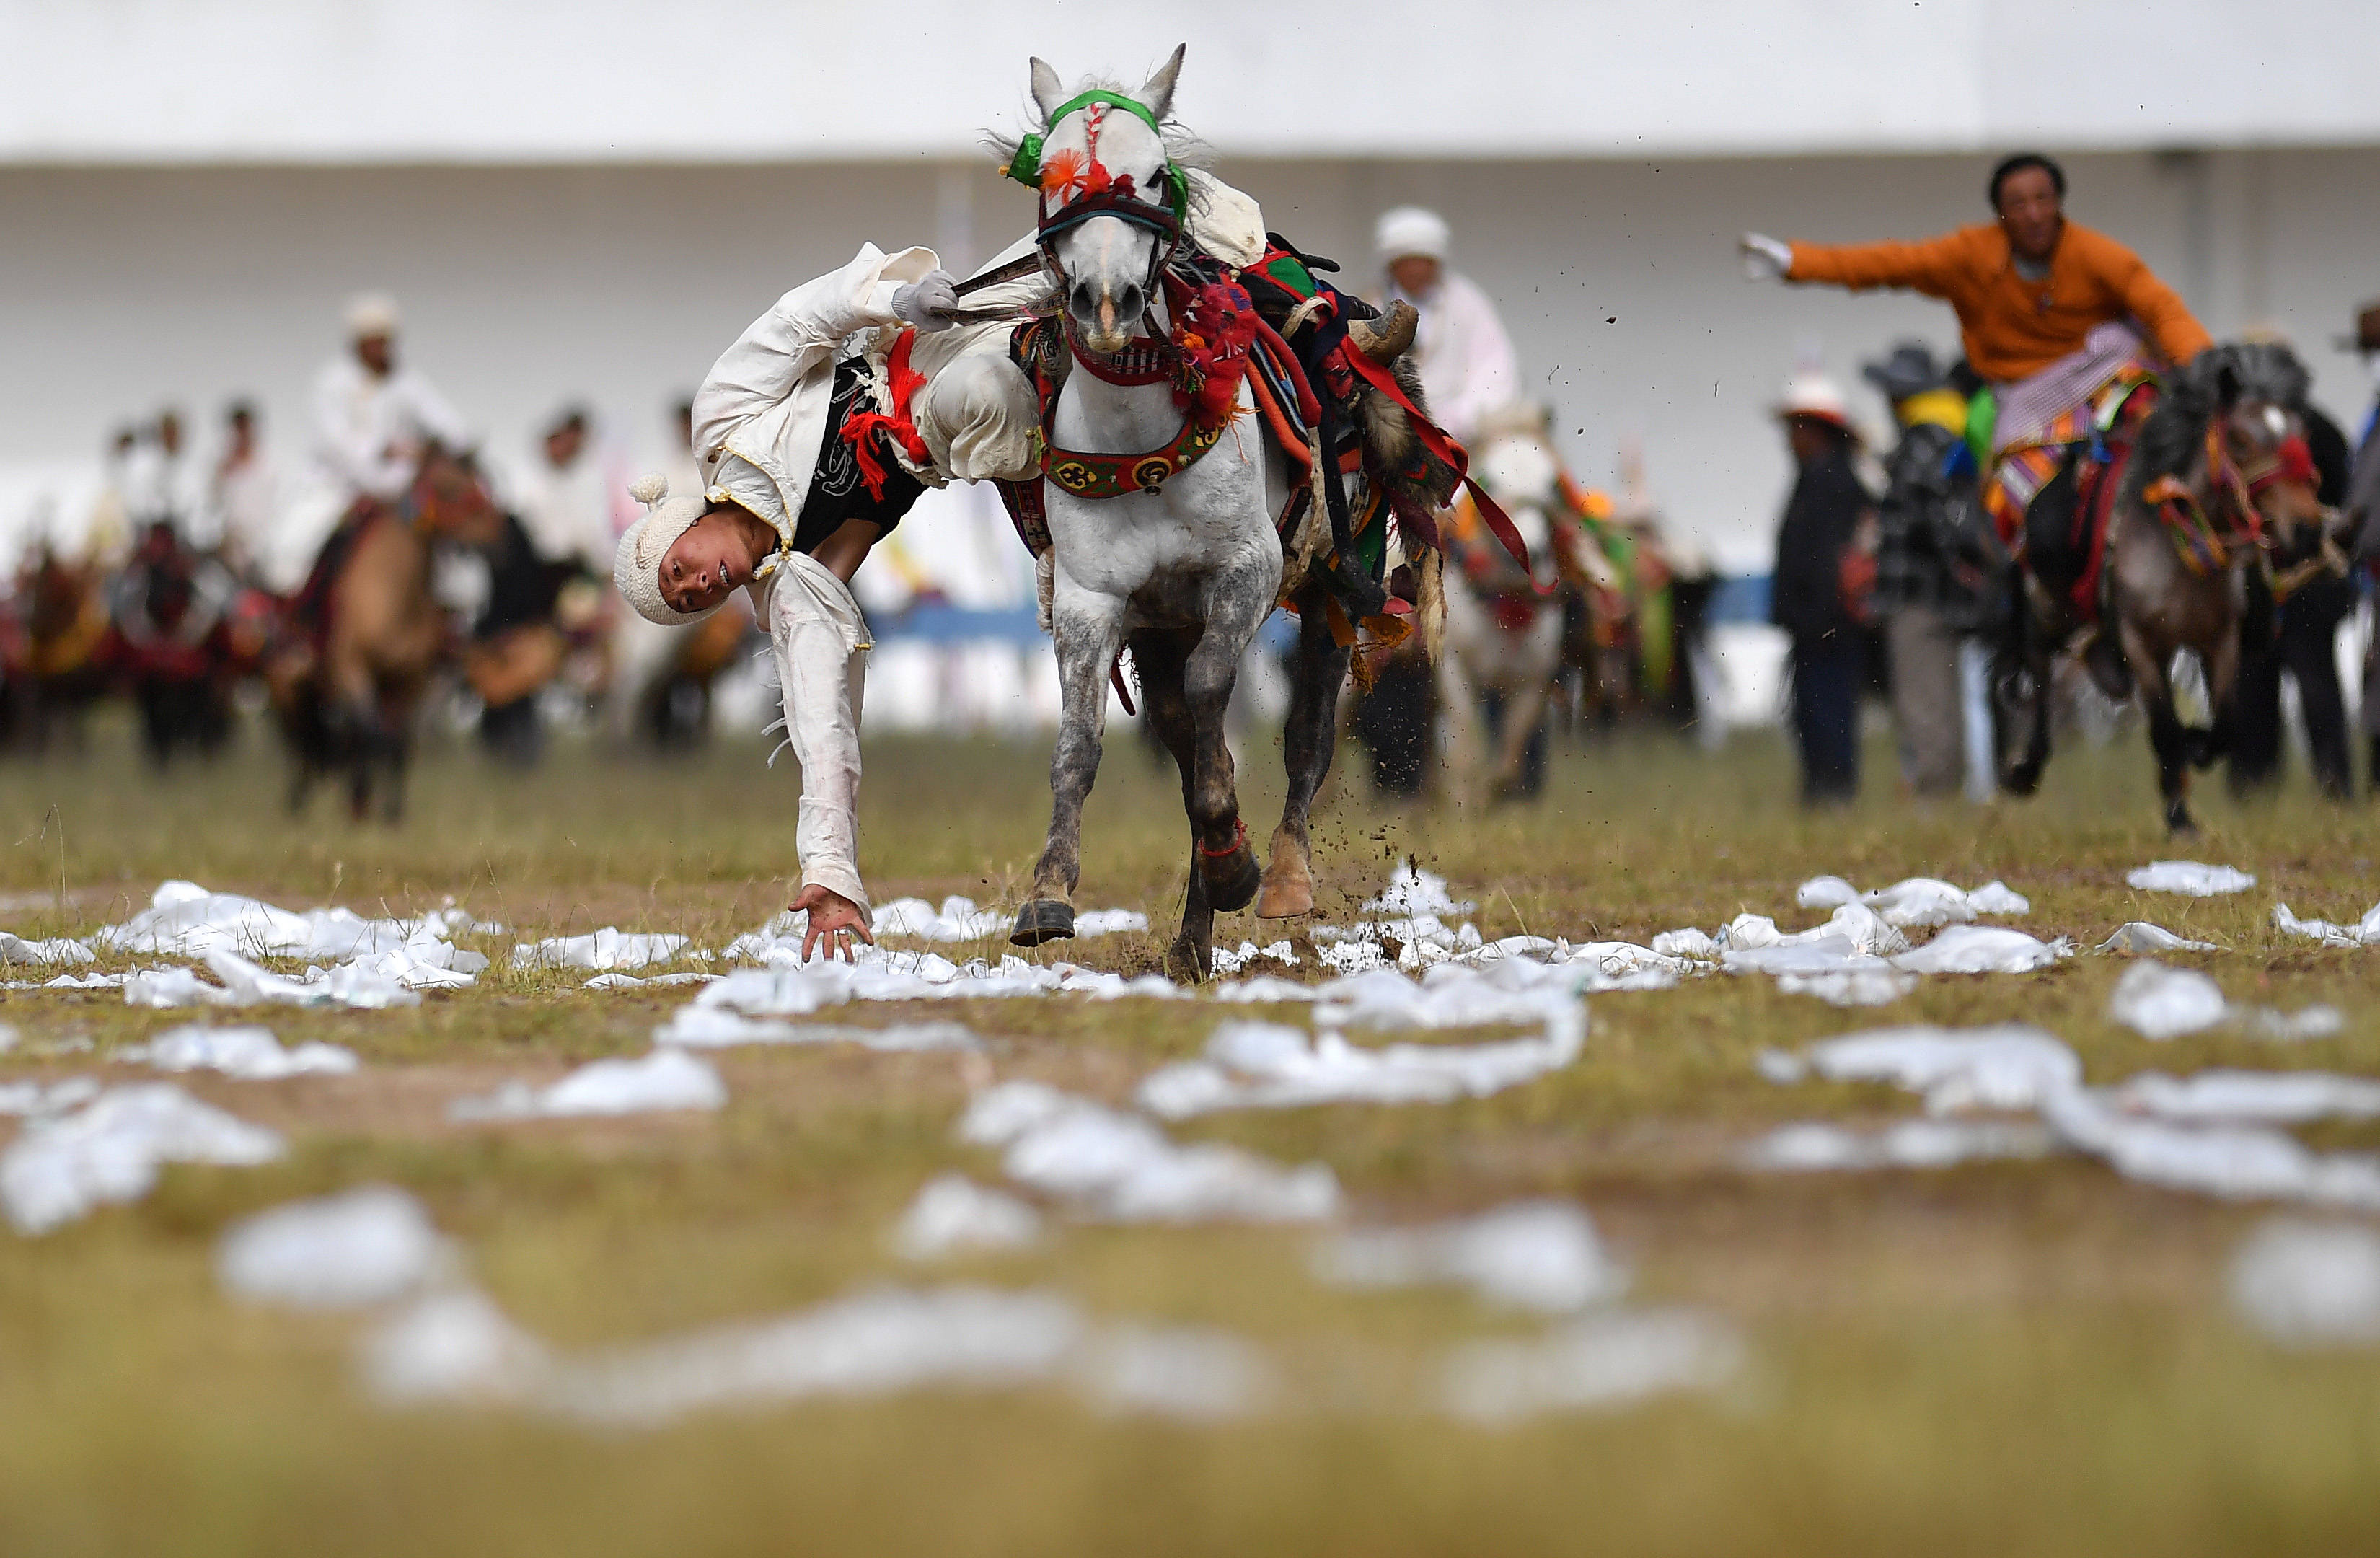 张汝锋 摄当日,在2020年西藏那曲羌塘恰青格萨尔赛马艺术节上,当地农